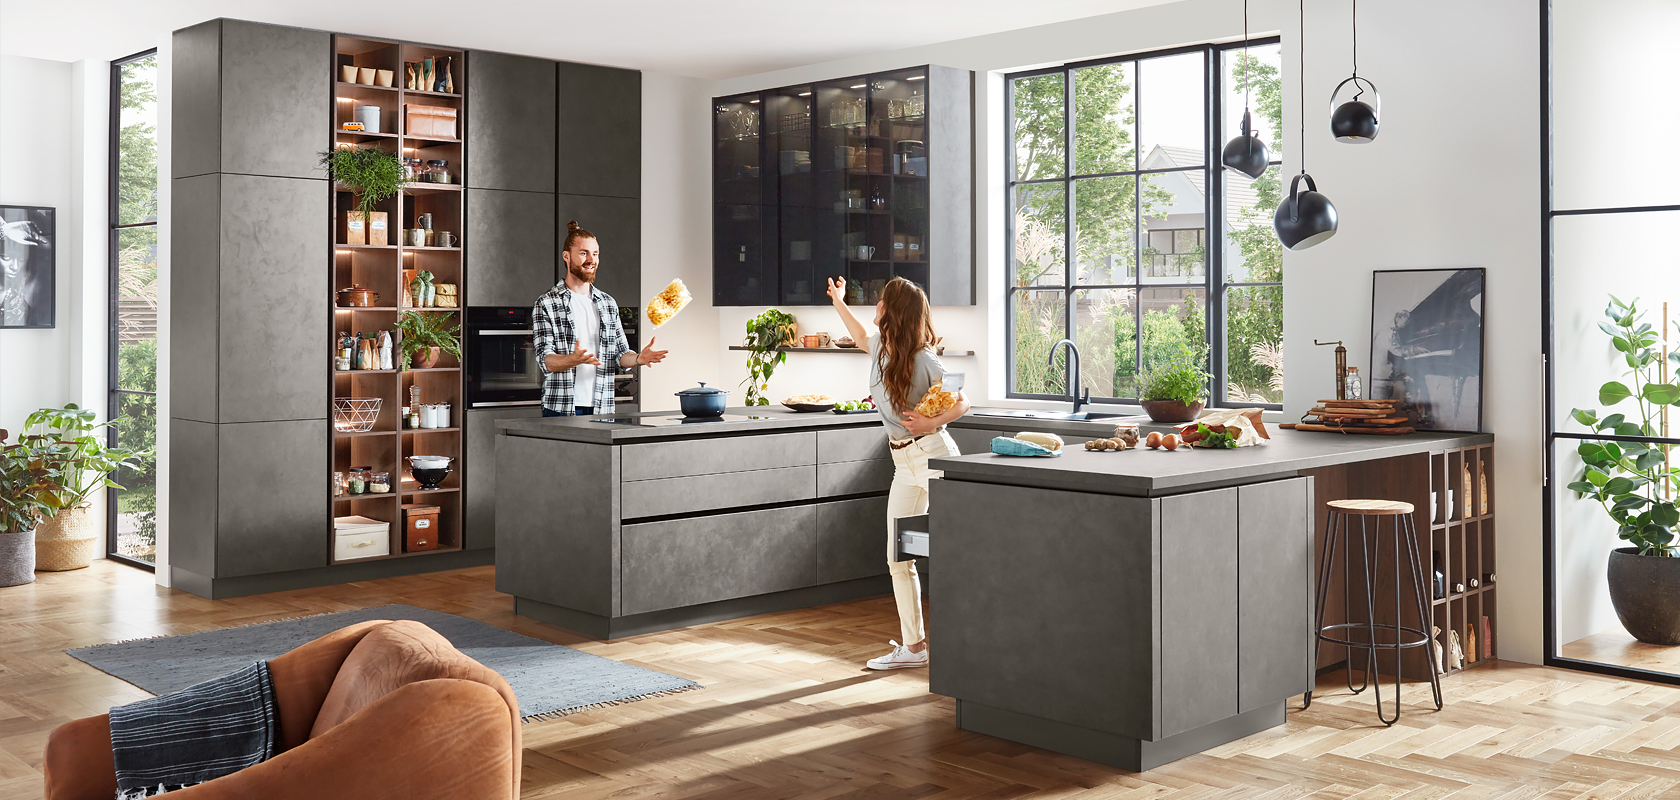 Moderne Küchengestaltung mit eleganten grauen Schränken, integrierten Geräten und einer zentralen Insel. Ein Paar genießt das Kochen im gut beleuchteten, geräumigen Innenraum.